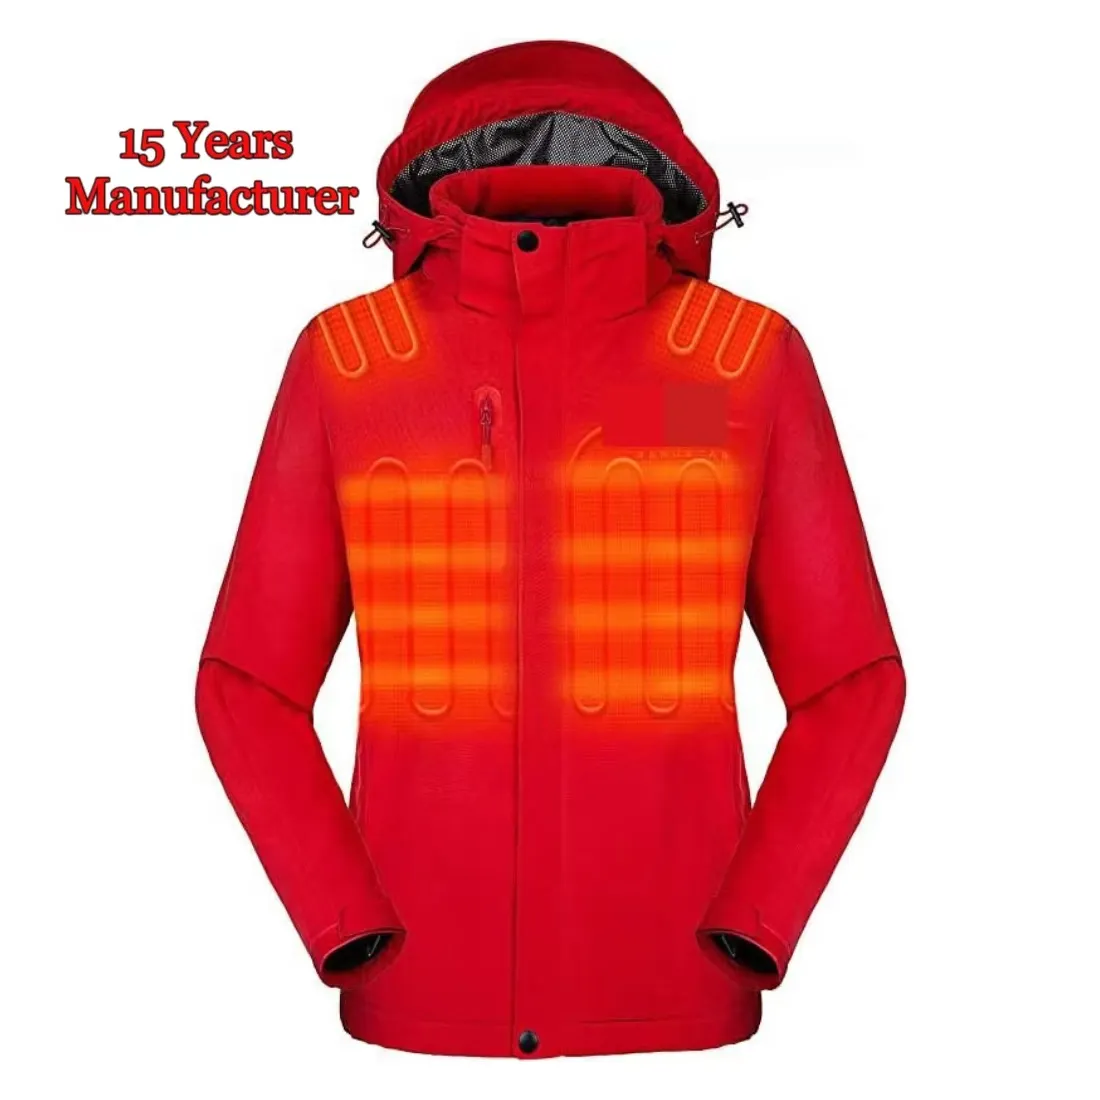 Yeni akıllı 7.4V elektrikli ısıtmalı ceket 3 sıcaklık kontrolü su geçirmez artı boyutu uzun ve baskılı Polyester sıcak ısıtmalı giyim